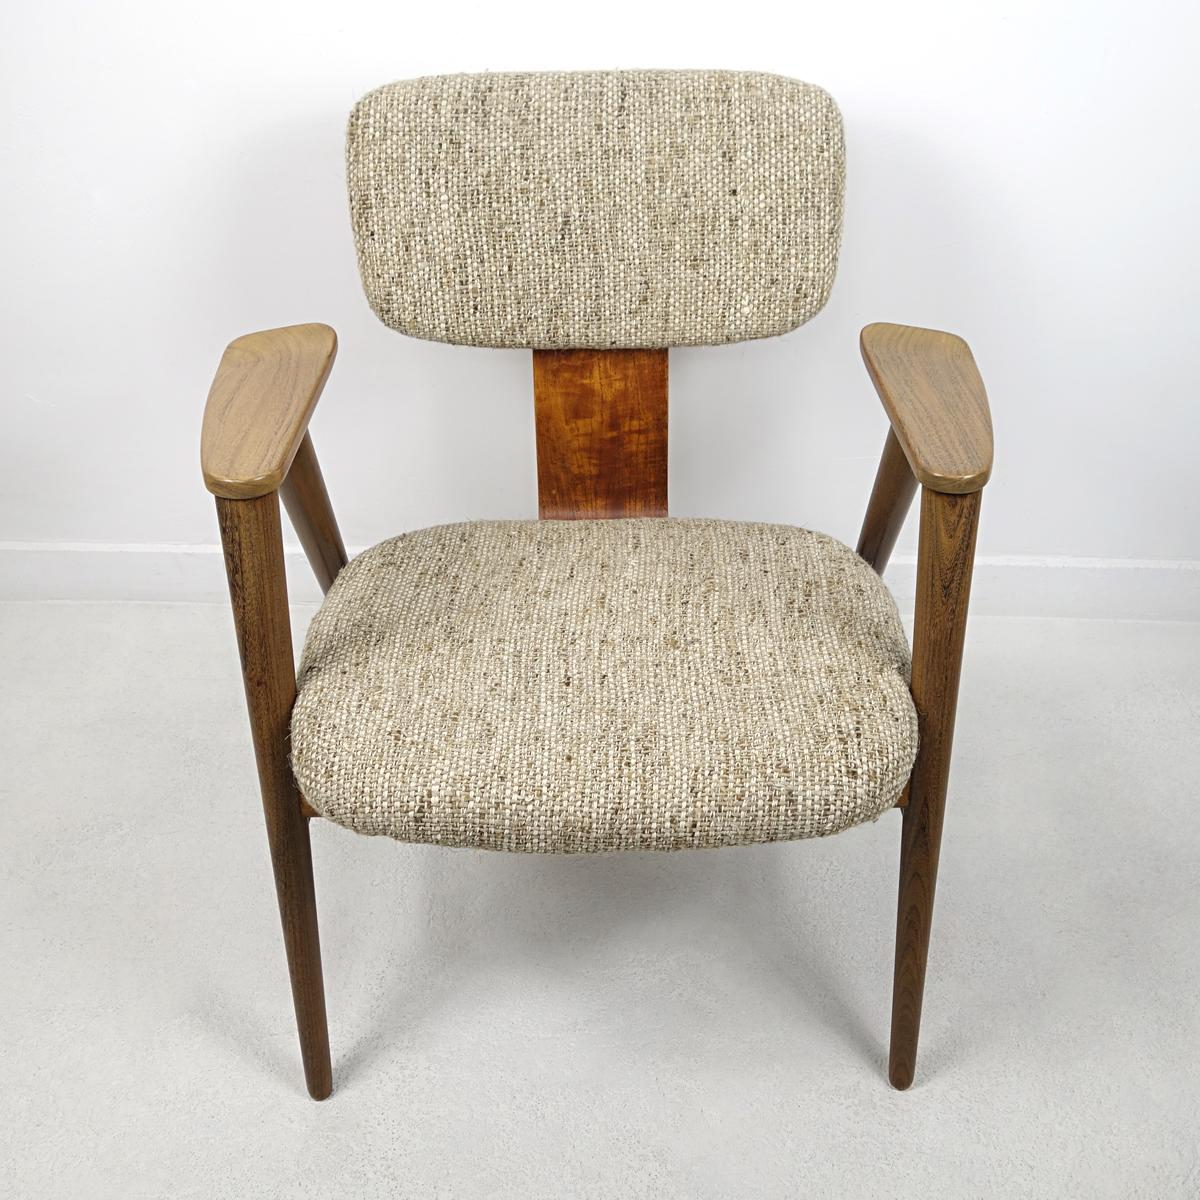 Élégance et beauté sont les mots qui décrivent le mieux cette chaise. Il a été conçu par Cees Braakman pour le célèbre label néerlandais Pastoe.
La chaise a une structure en bois de teck et a été retapissée par nos soins.